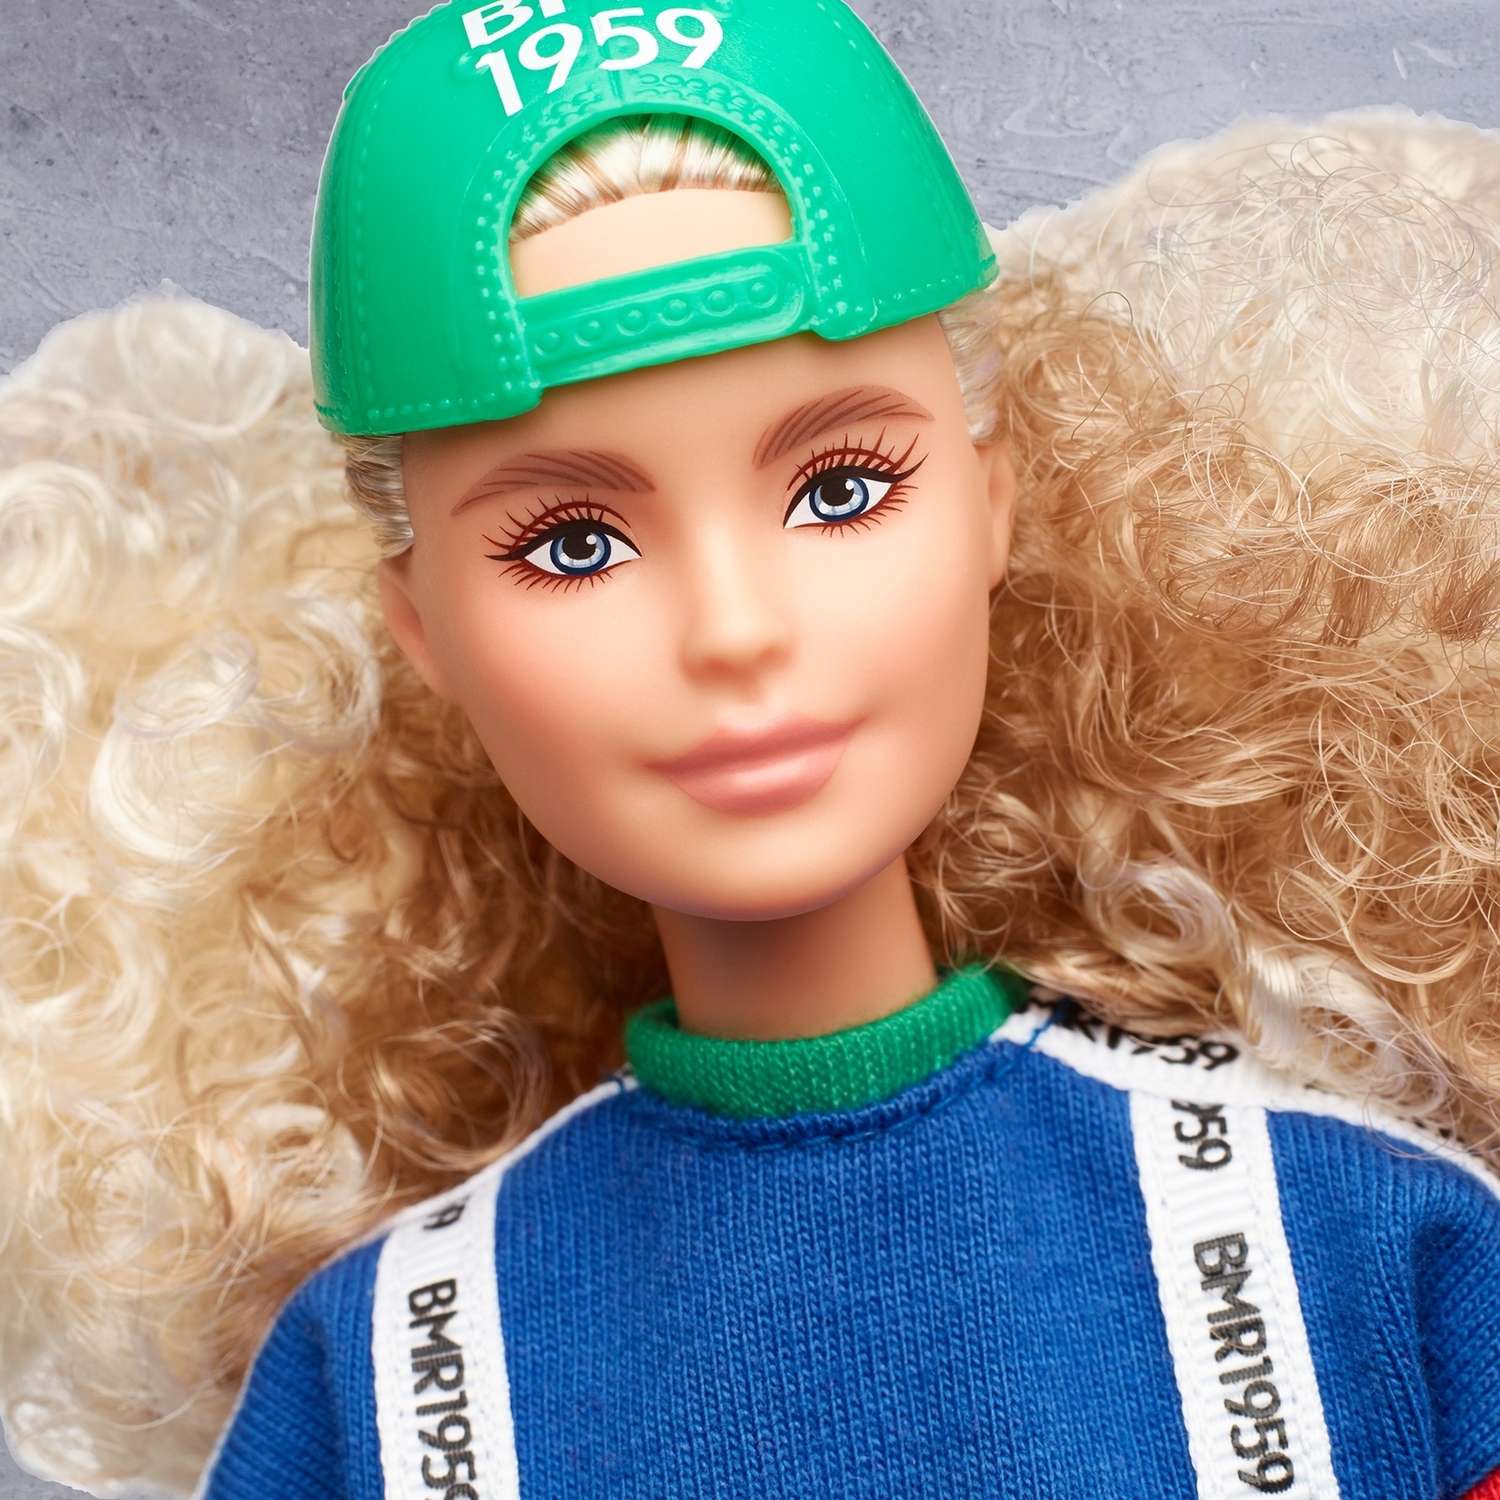 Кукла Barbie коллекционная BMR1959 GHT92 GHT92 - фото 14